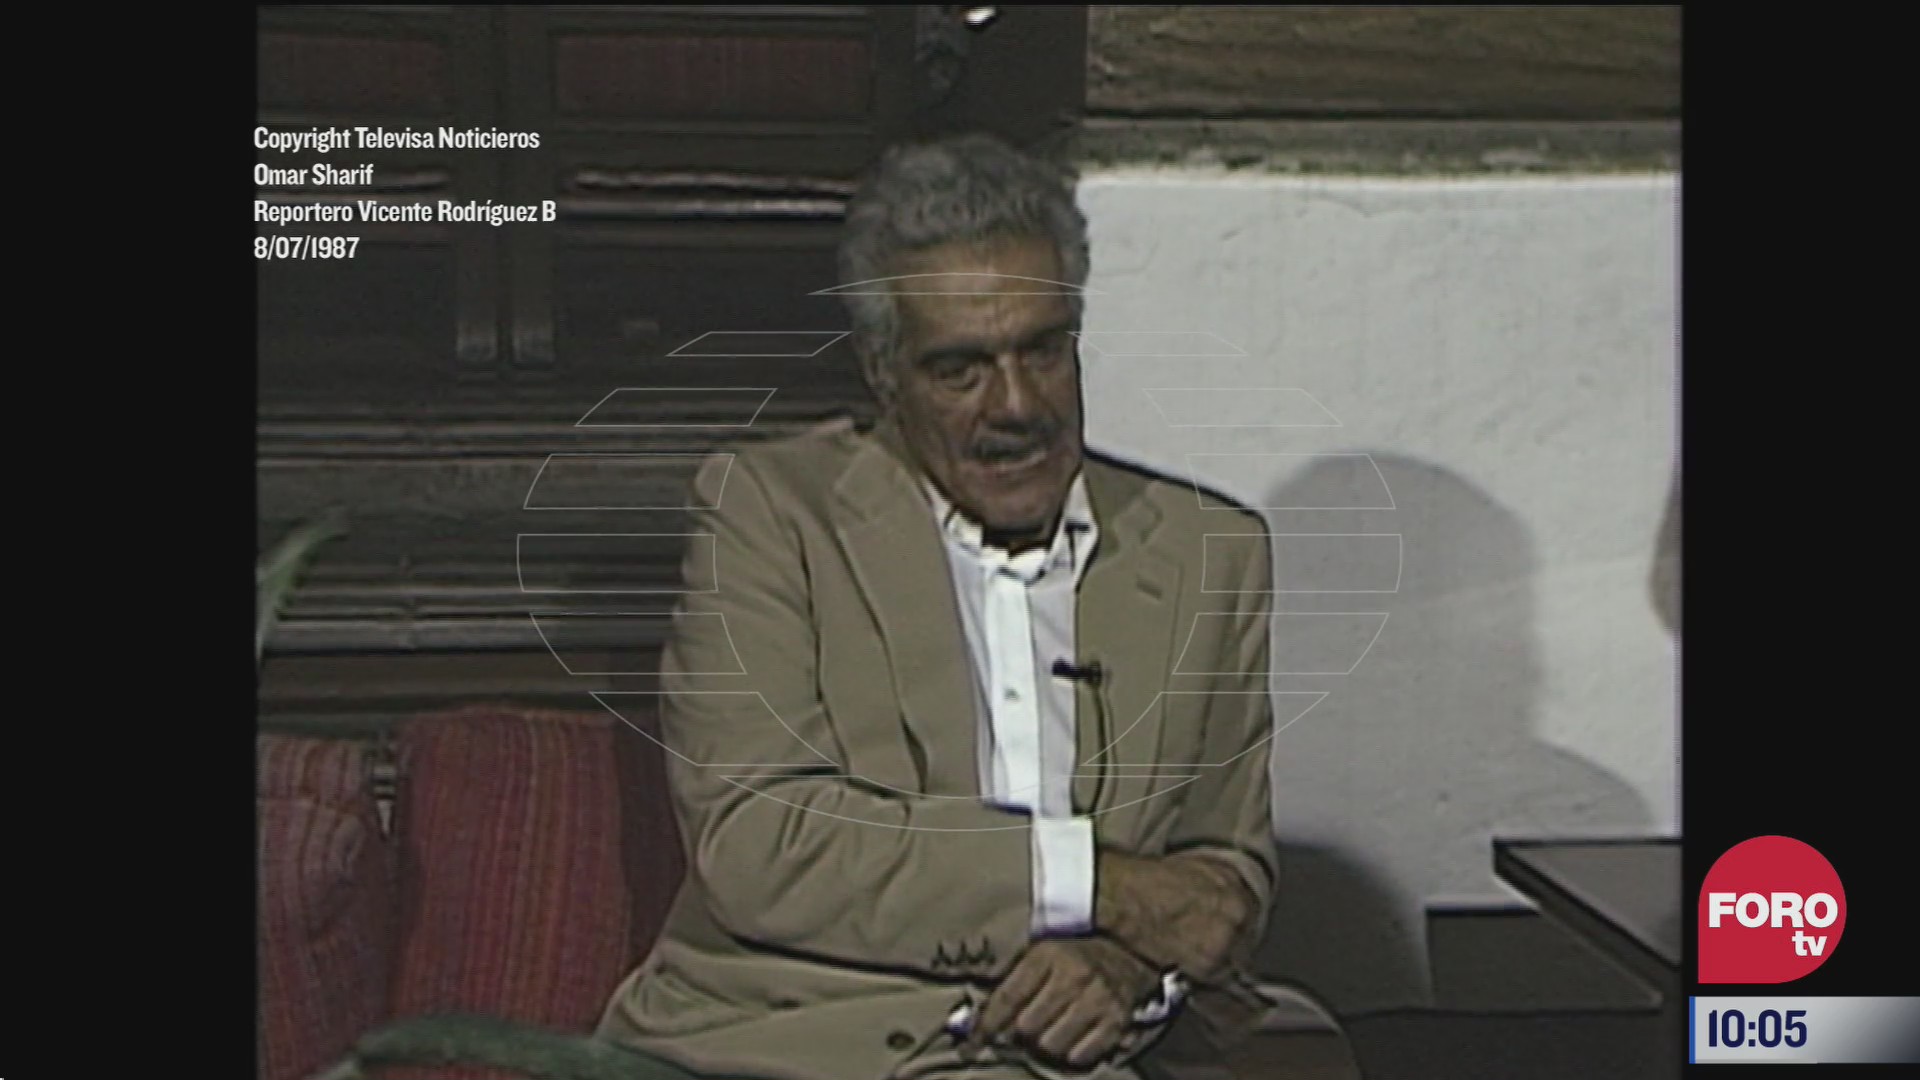 joyasdetv entrevista a omar sharif